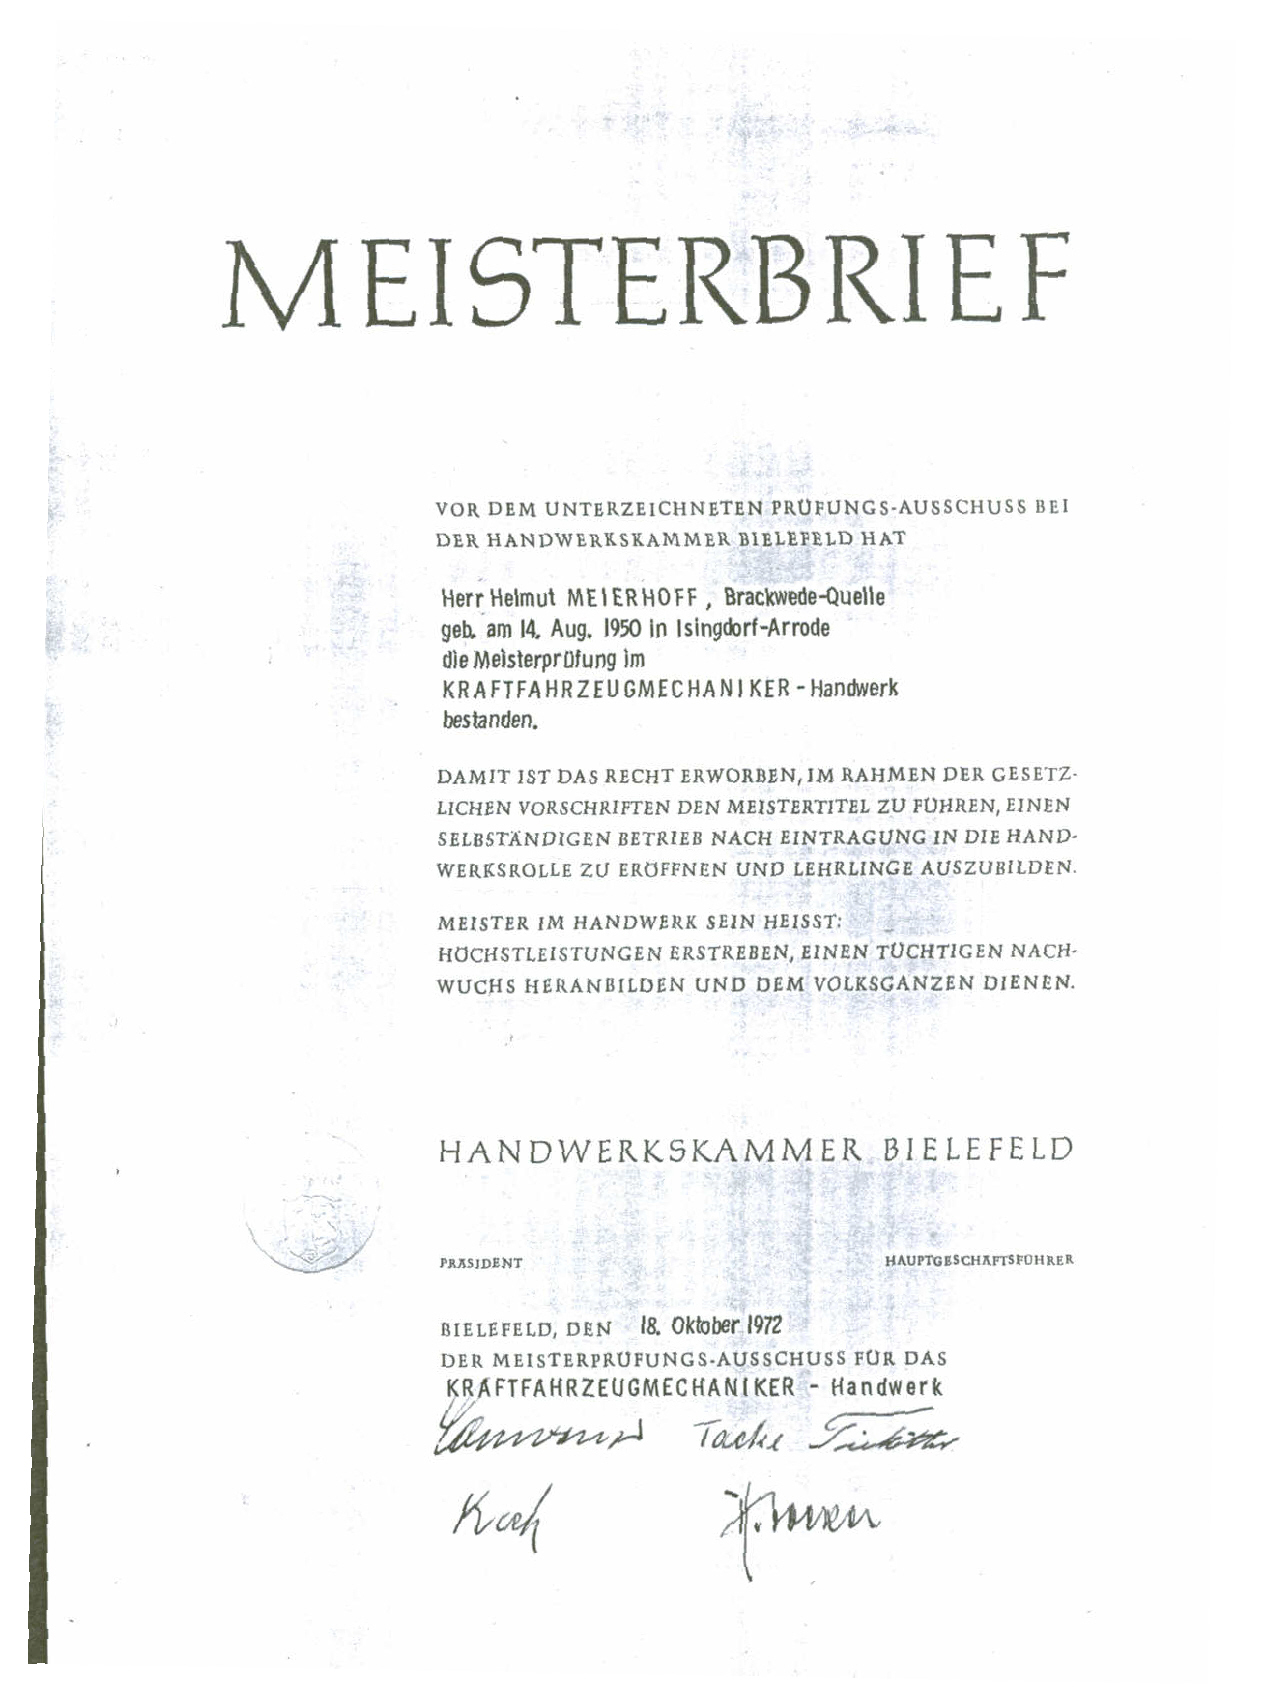 Der Meisterbrief von Helmut Meierhoff, ausgestellt von der Handwerkskammer zu Bielefeld